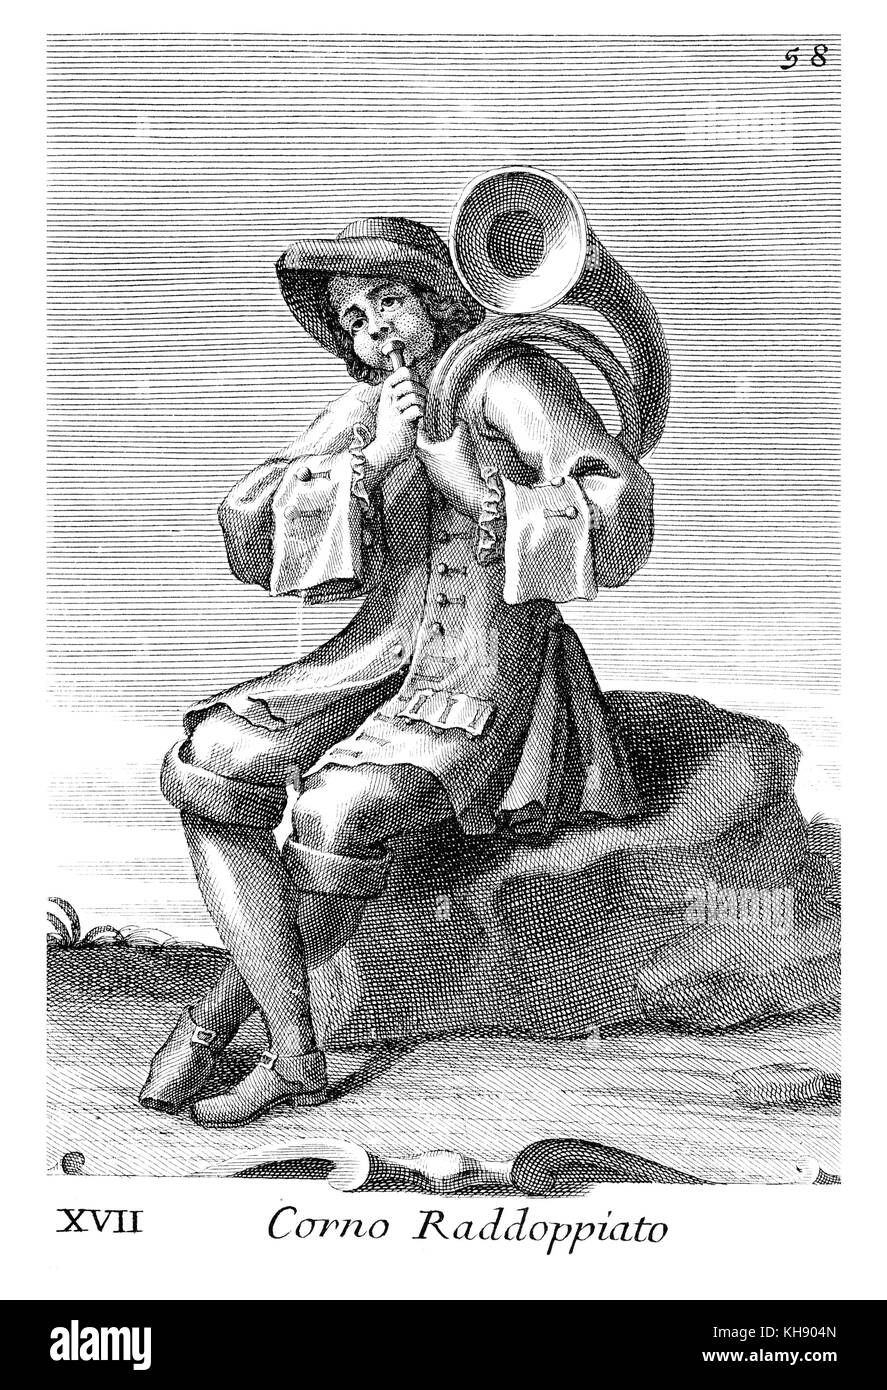 Mann spielt Horn. Abbildung von Filippo Bonanni's 'Gabinetto Armonico" im Jahre 1723 veröffentlicht, Abbildung 17. Kupferstich von Arnold Van Westerhout. Bildunterschrift liest Corno Raddoppiato. Stockfoto